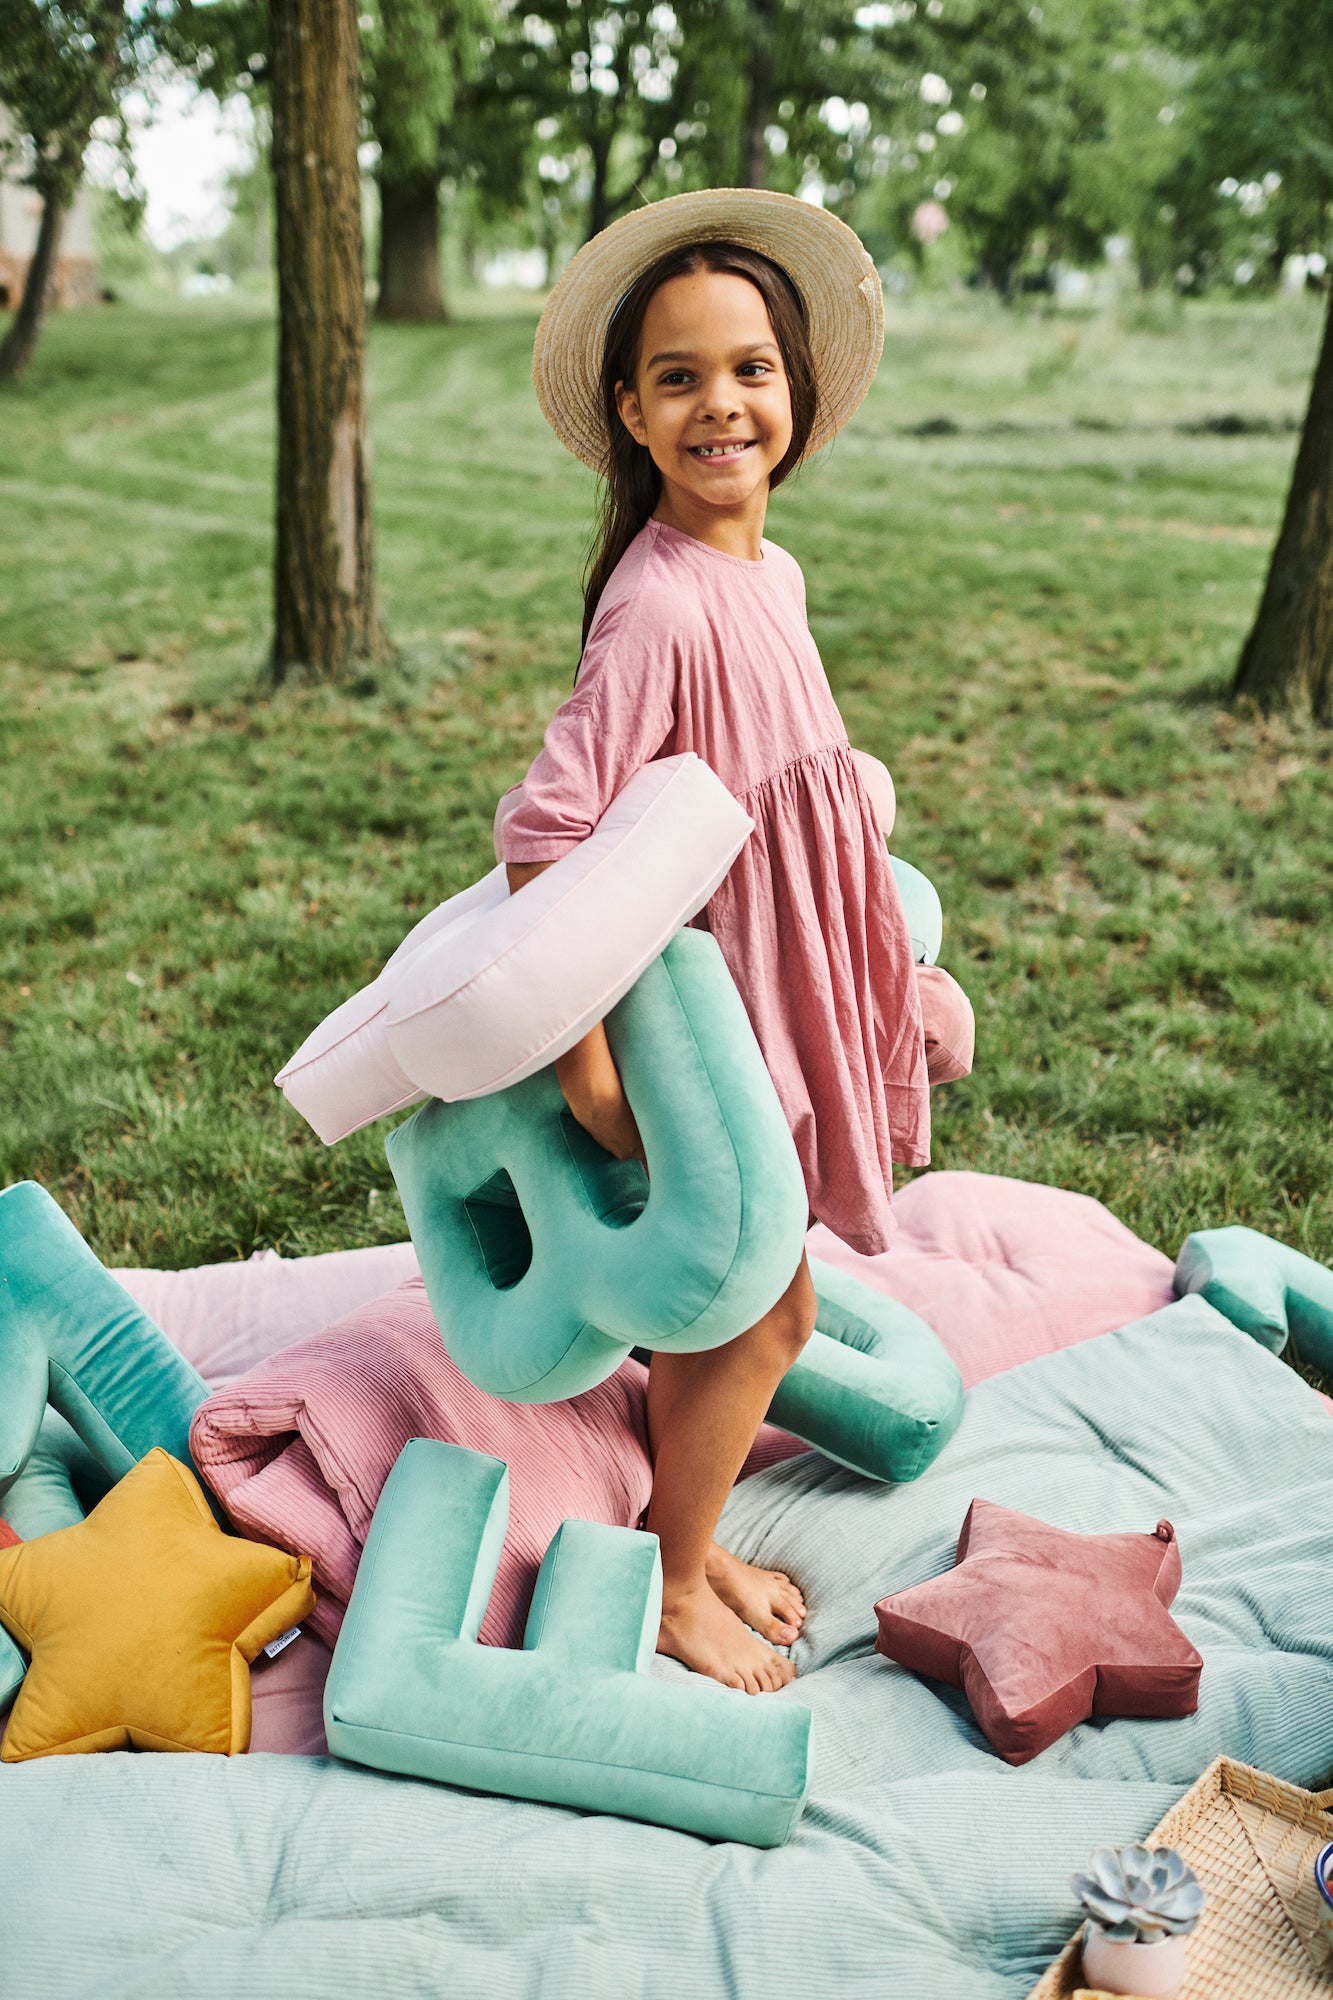 Poduszka literka welurowa od Bettys Home trzymana przez dziewczynkę w parku w trakcie pikniku